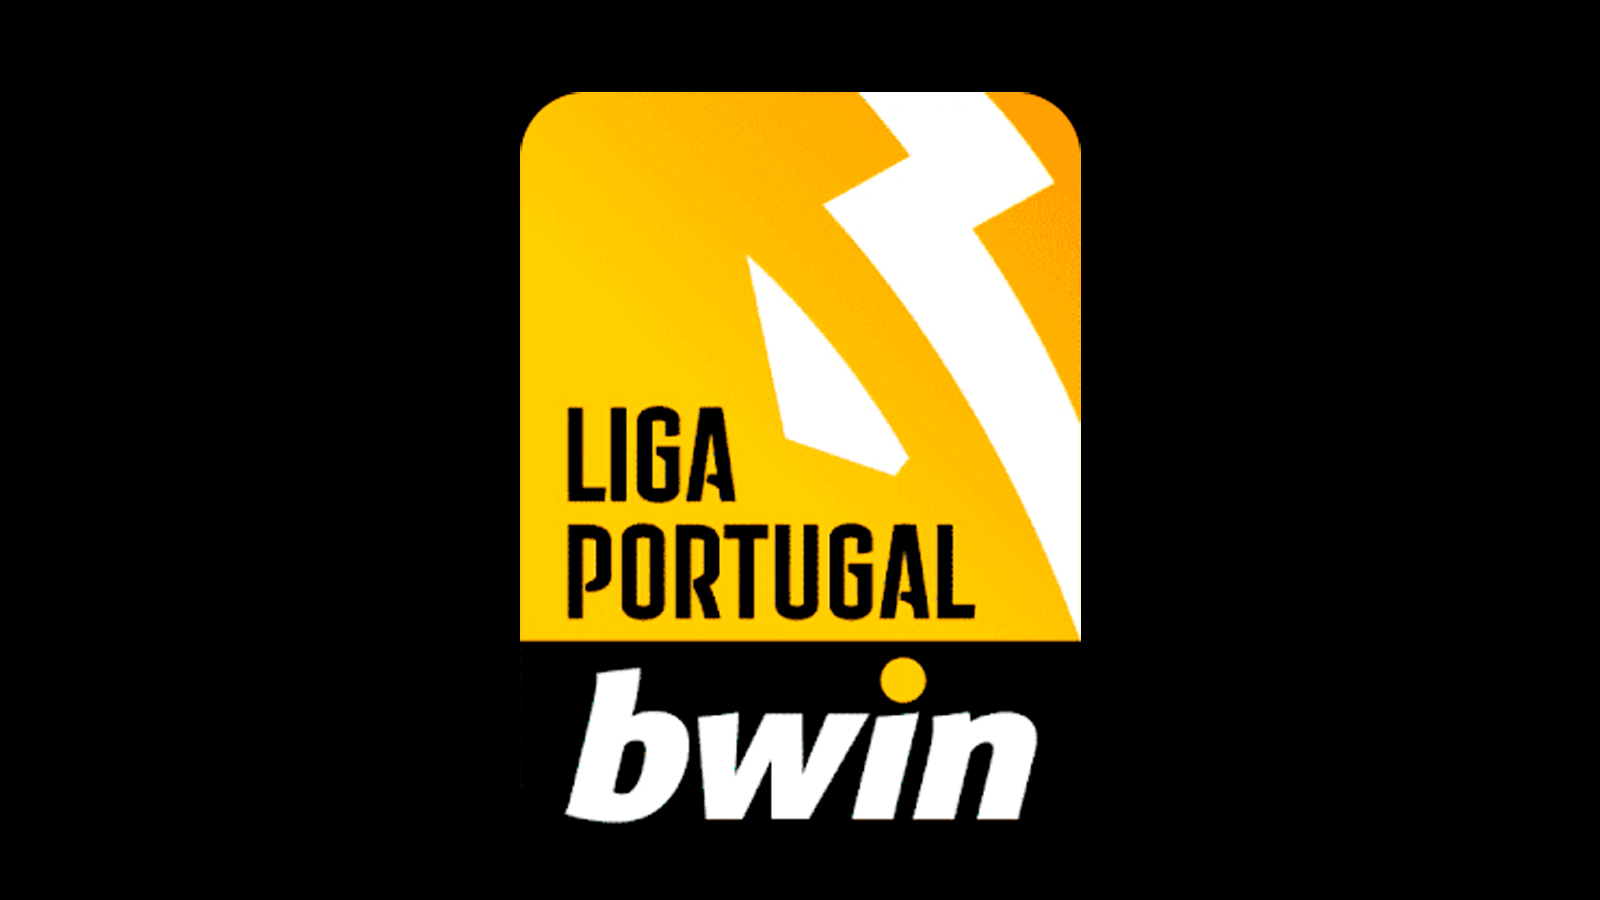 Liga Portugal bwin é a nova designação do principal escalão do futebol português